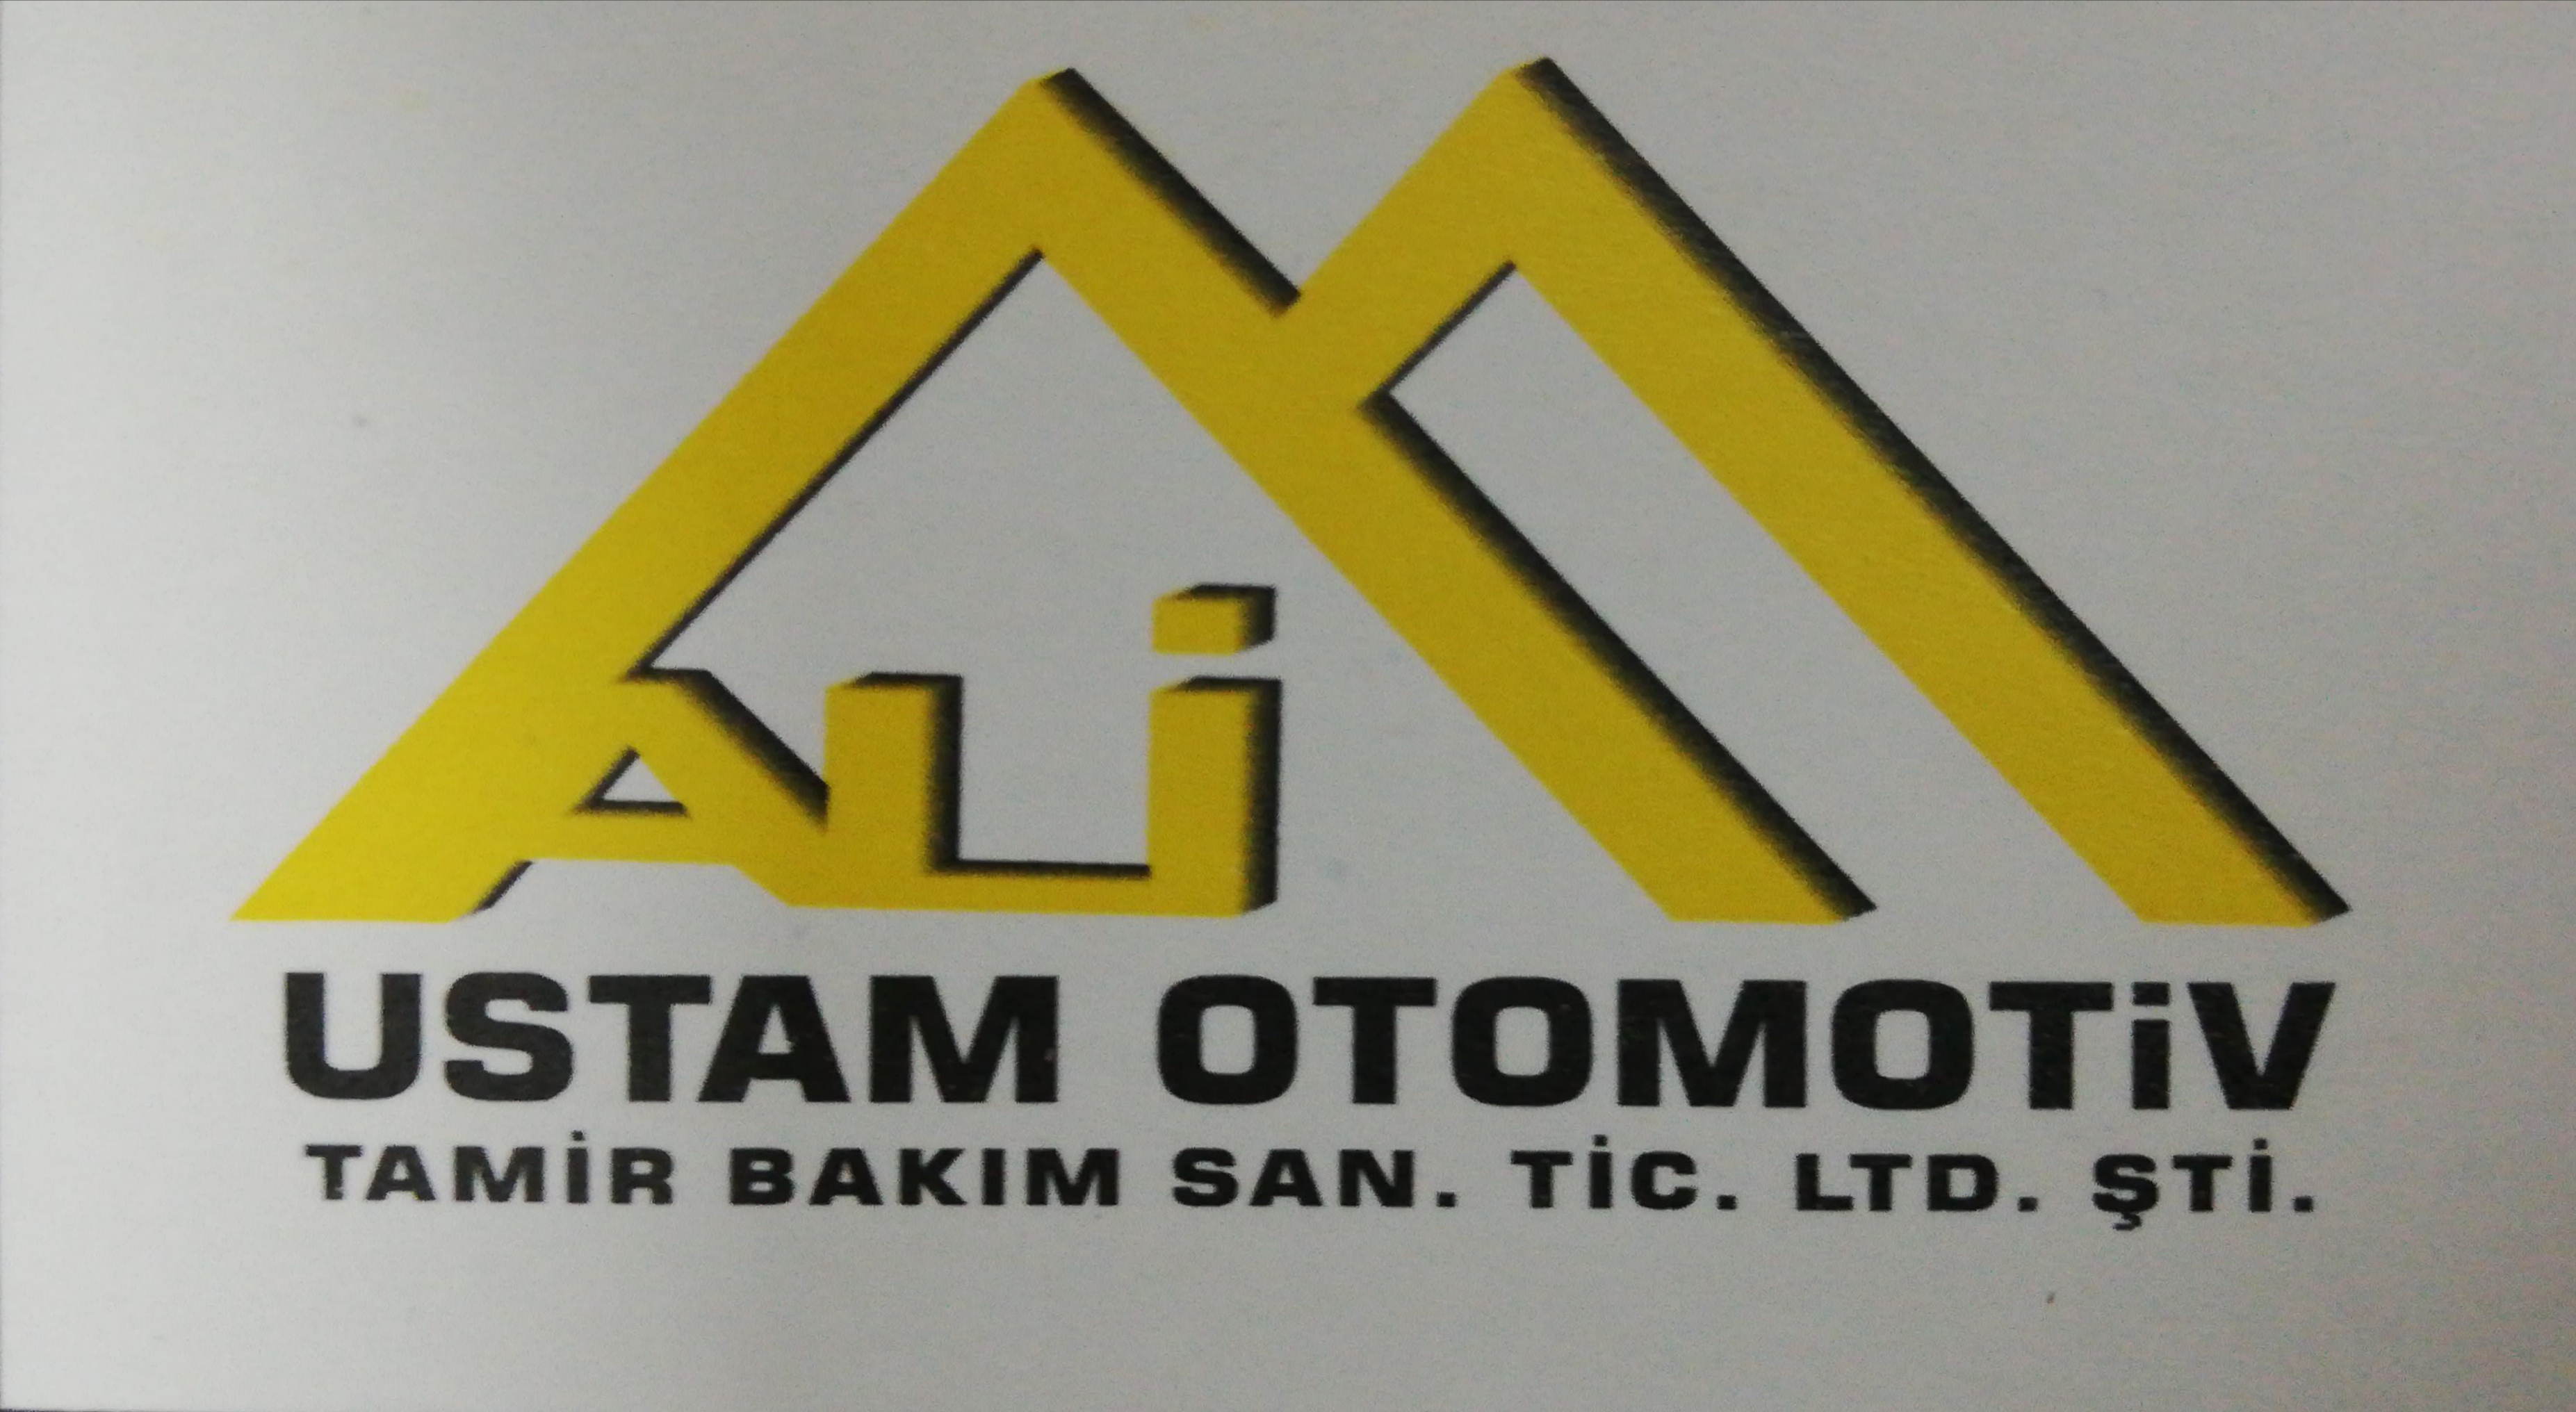 Ustam Otomotiv Tamir Bakım San. Ve Tic. Ltd. Şti.